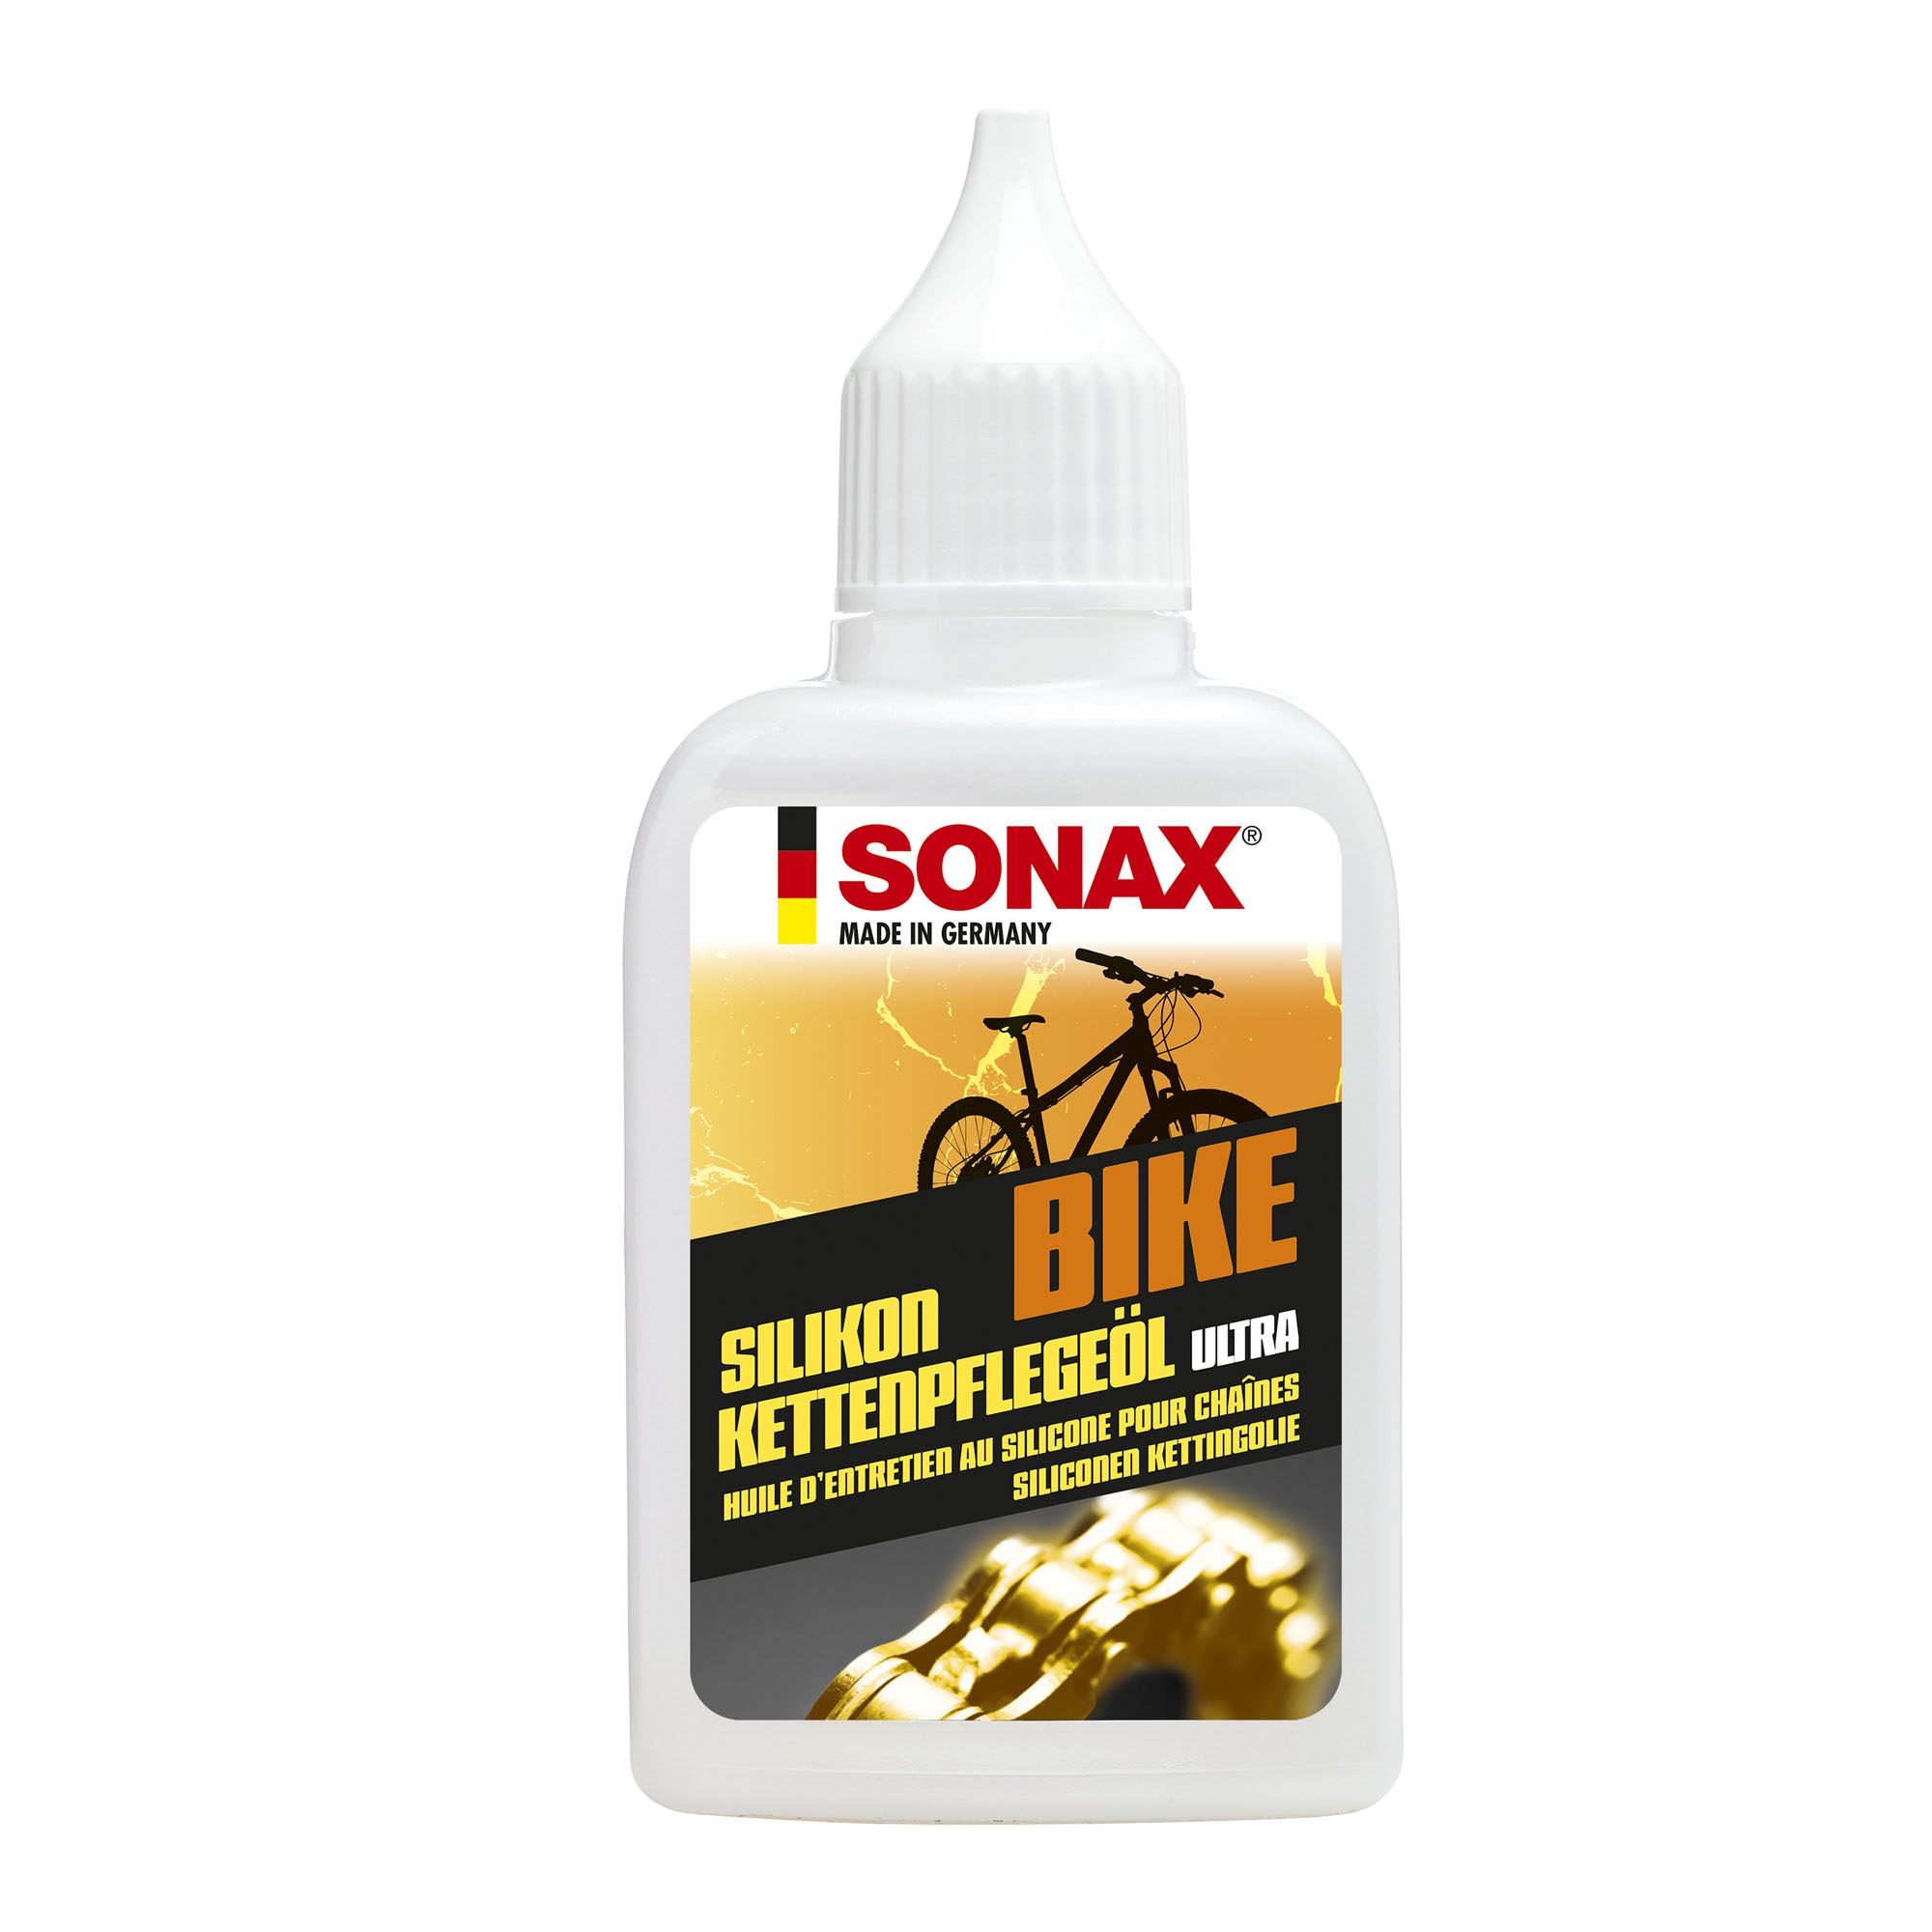 Sonax Silicone Chain Oil